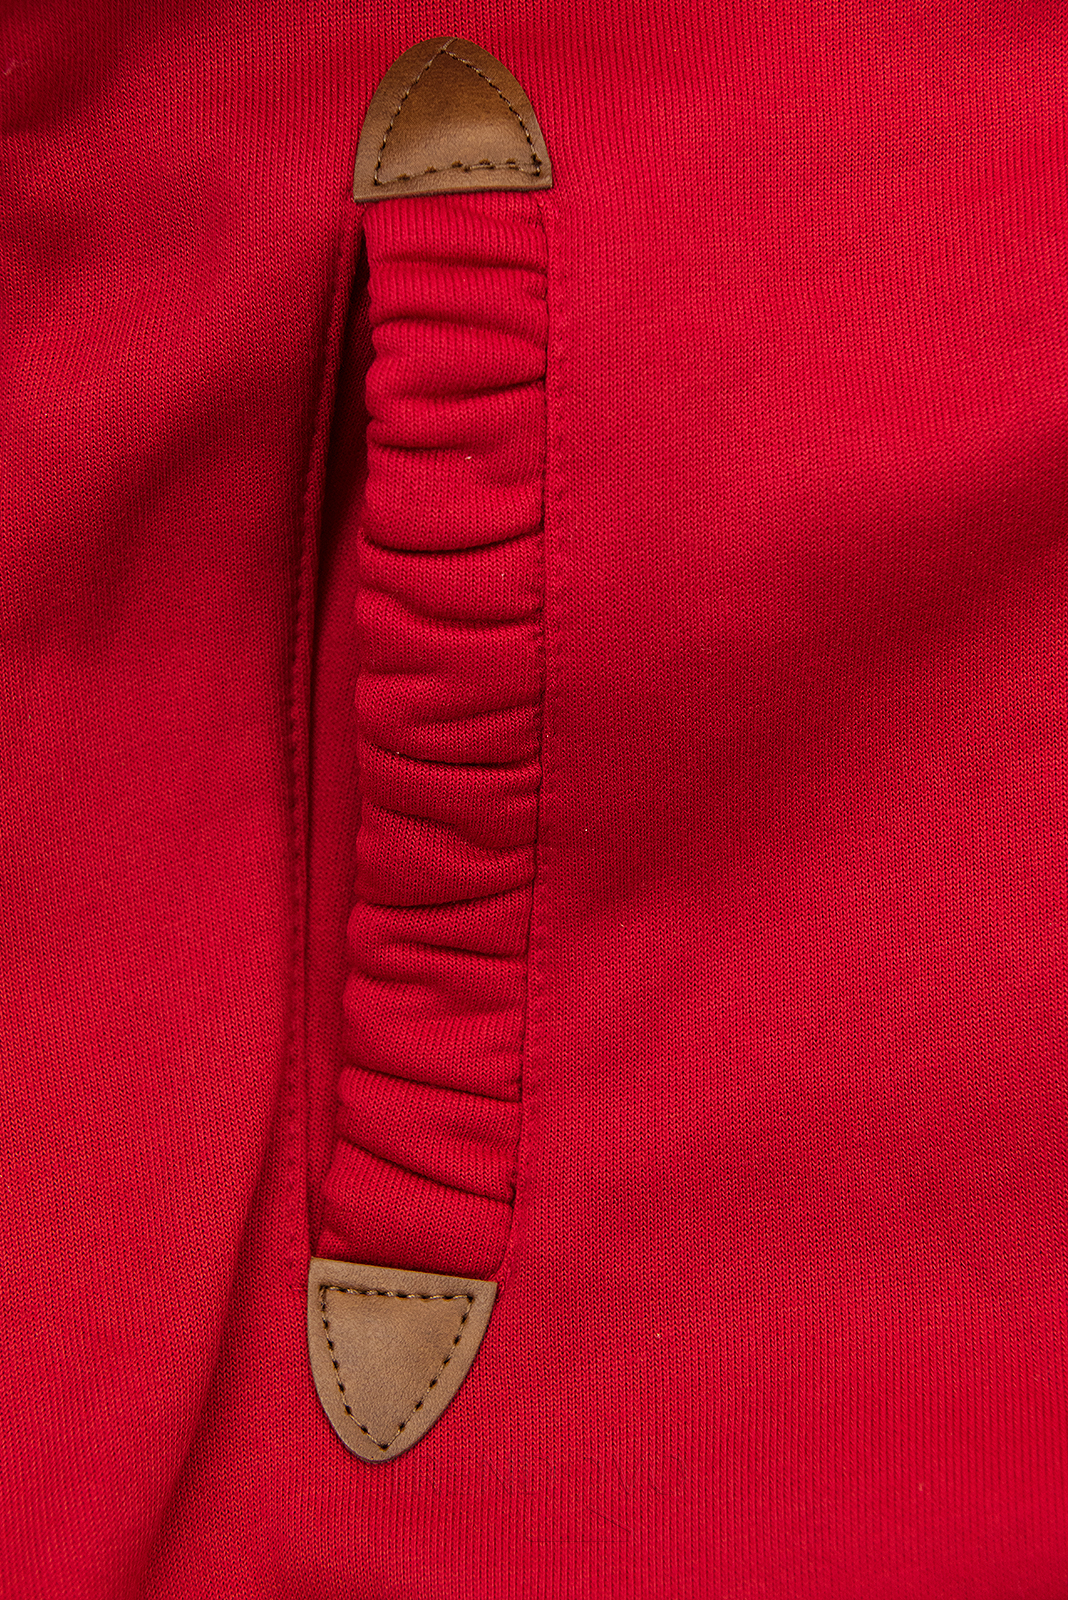 Červená mikina s barevnou podšívkou v kapuci